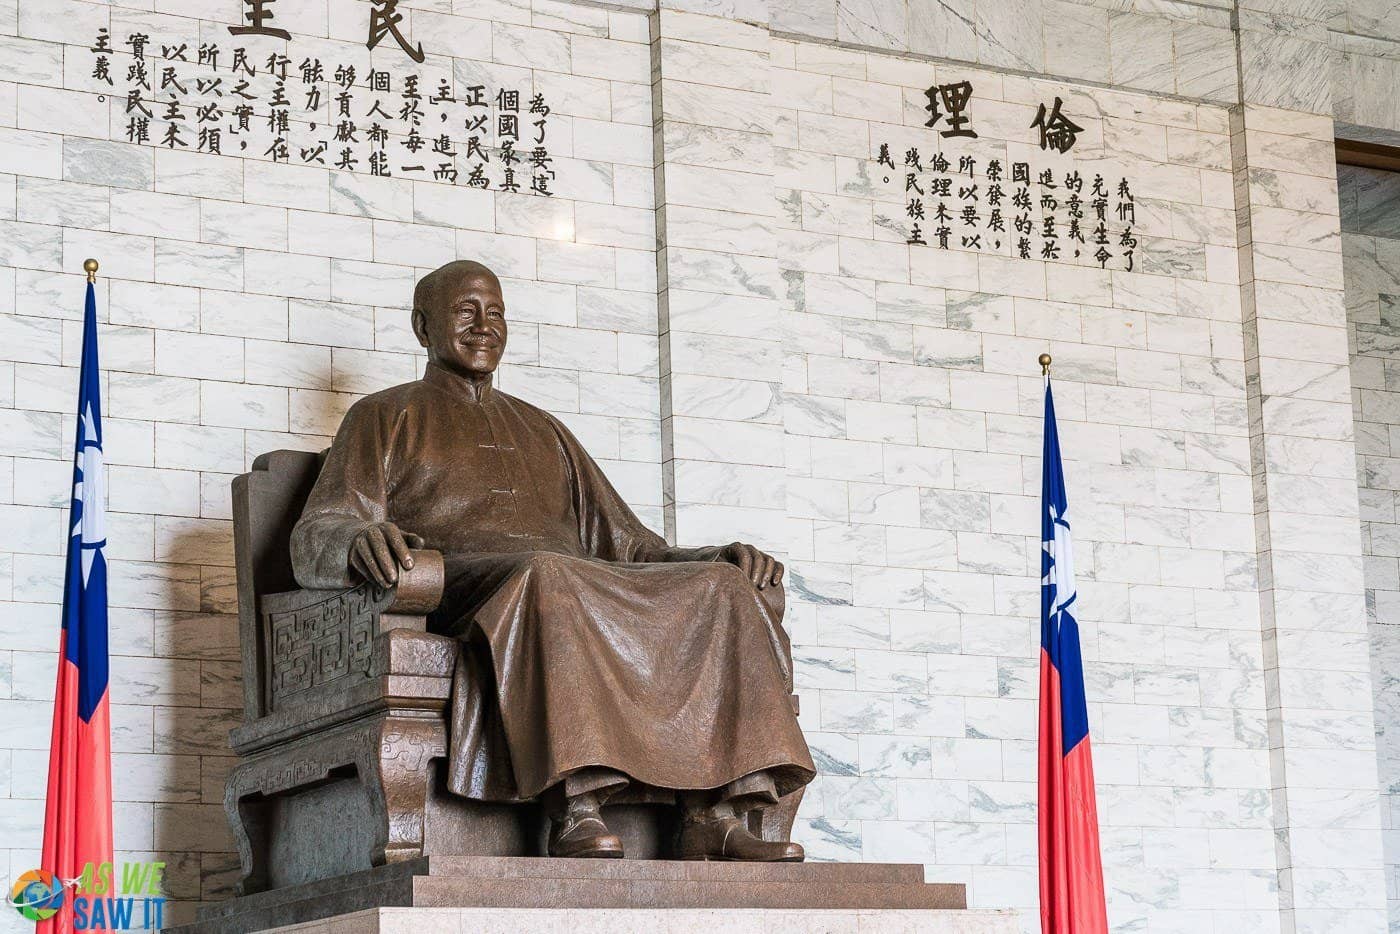 Chiang Kai-shek Memorial, Taipei, Taiwan